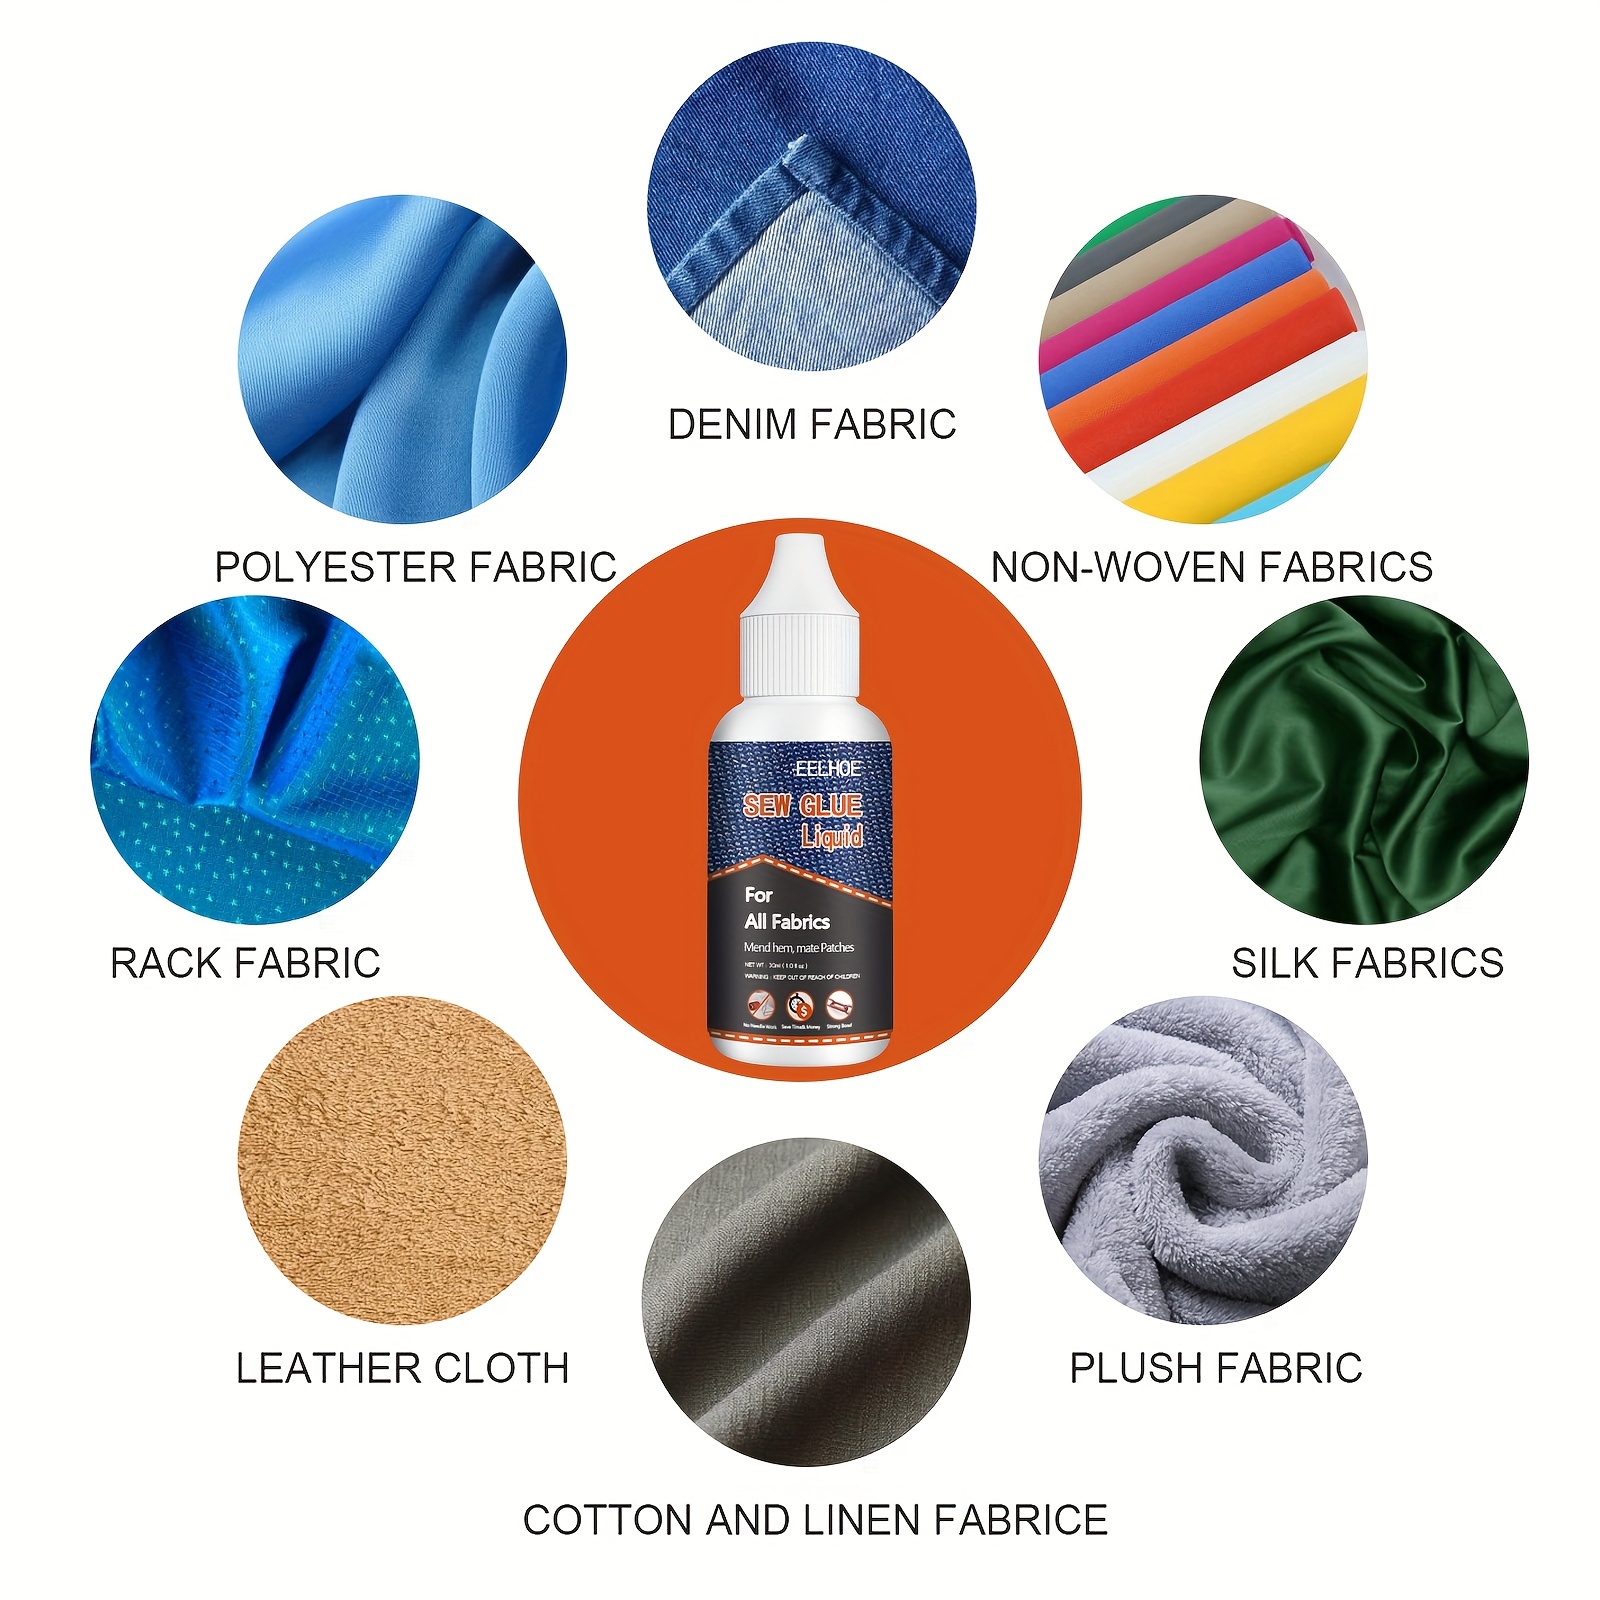 Cloth Repair Sew Glue 50ml, Instant Sew Glue Bonding Liquid, Quick Dry  Multi Fabric Sew Glue, Fabric Glue For Clothing Permanent Washable